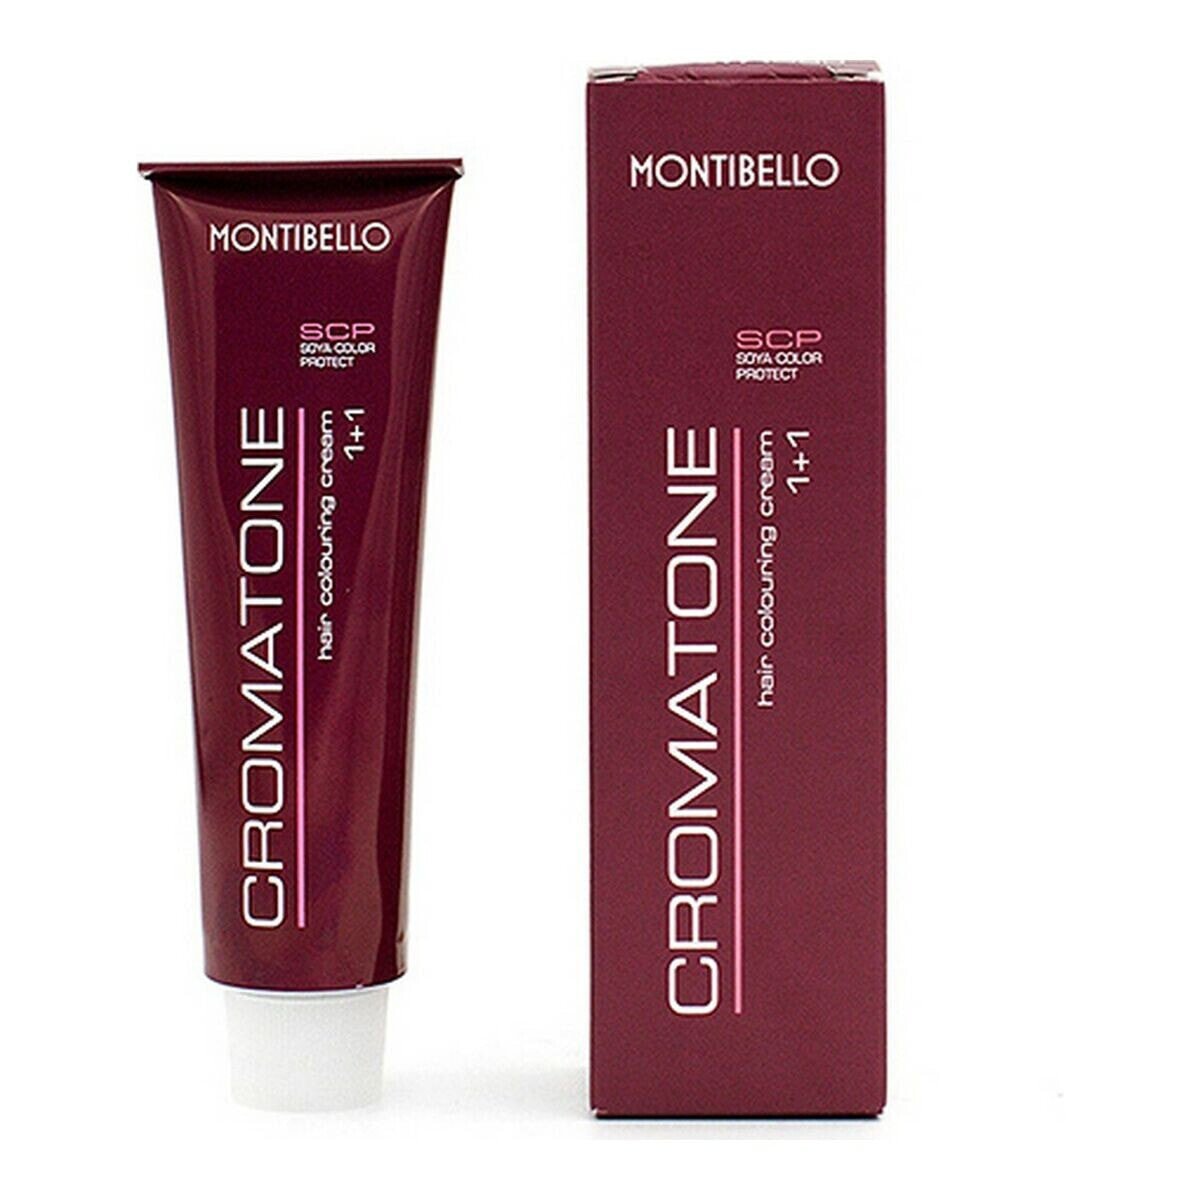 Постоянная краска Cromatone Montibello Nº 5 (60 ml)